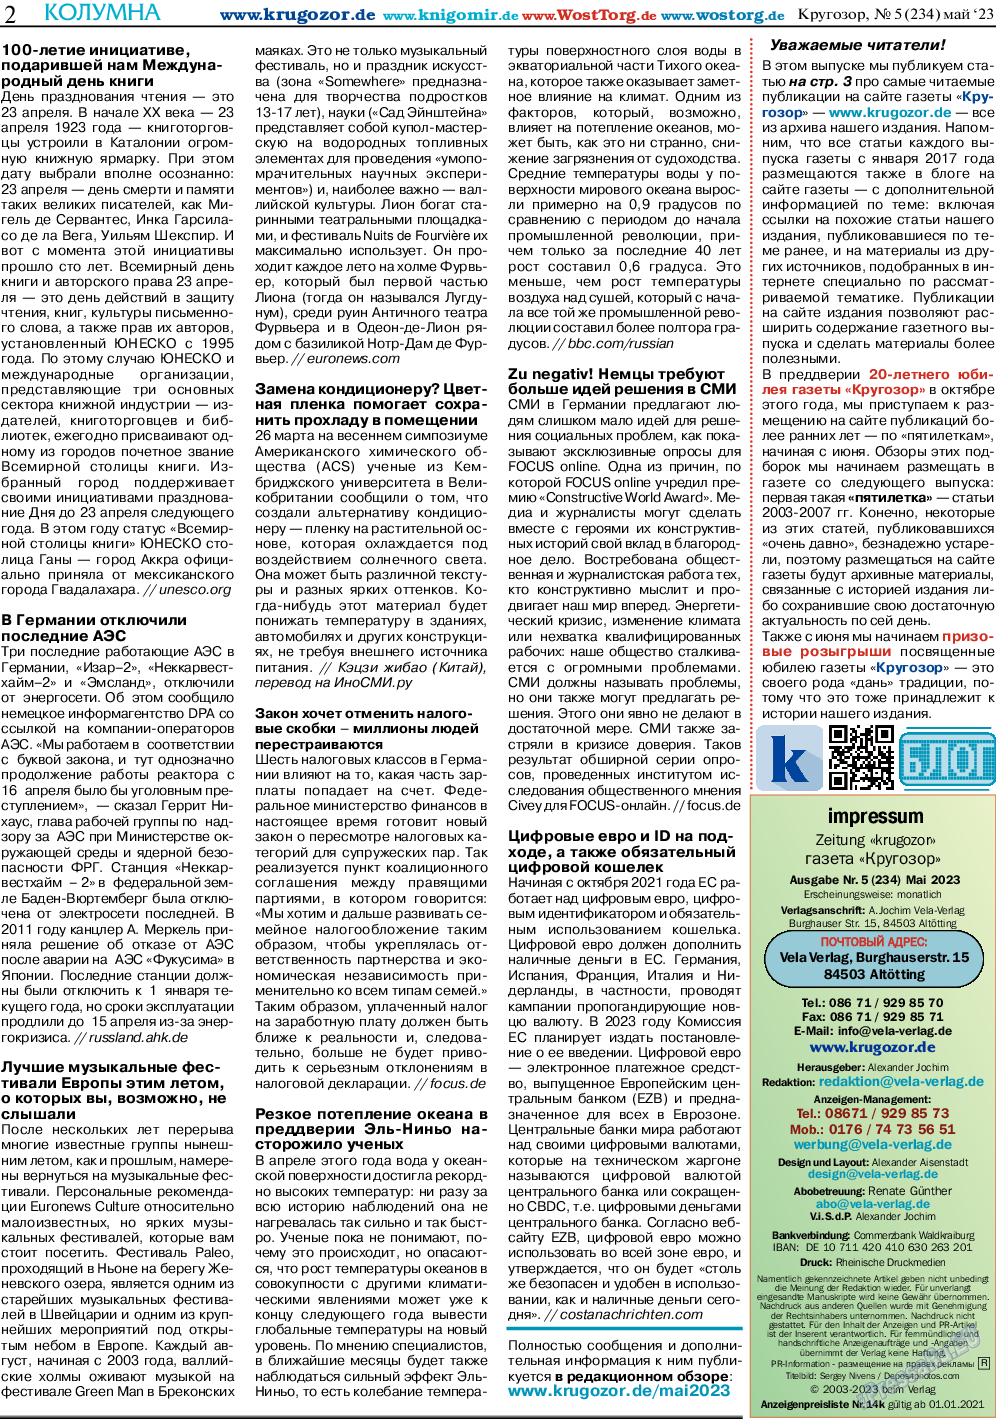 Кругозор, газета. 2023 №5 стр.2